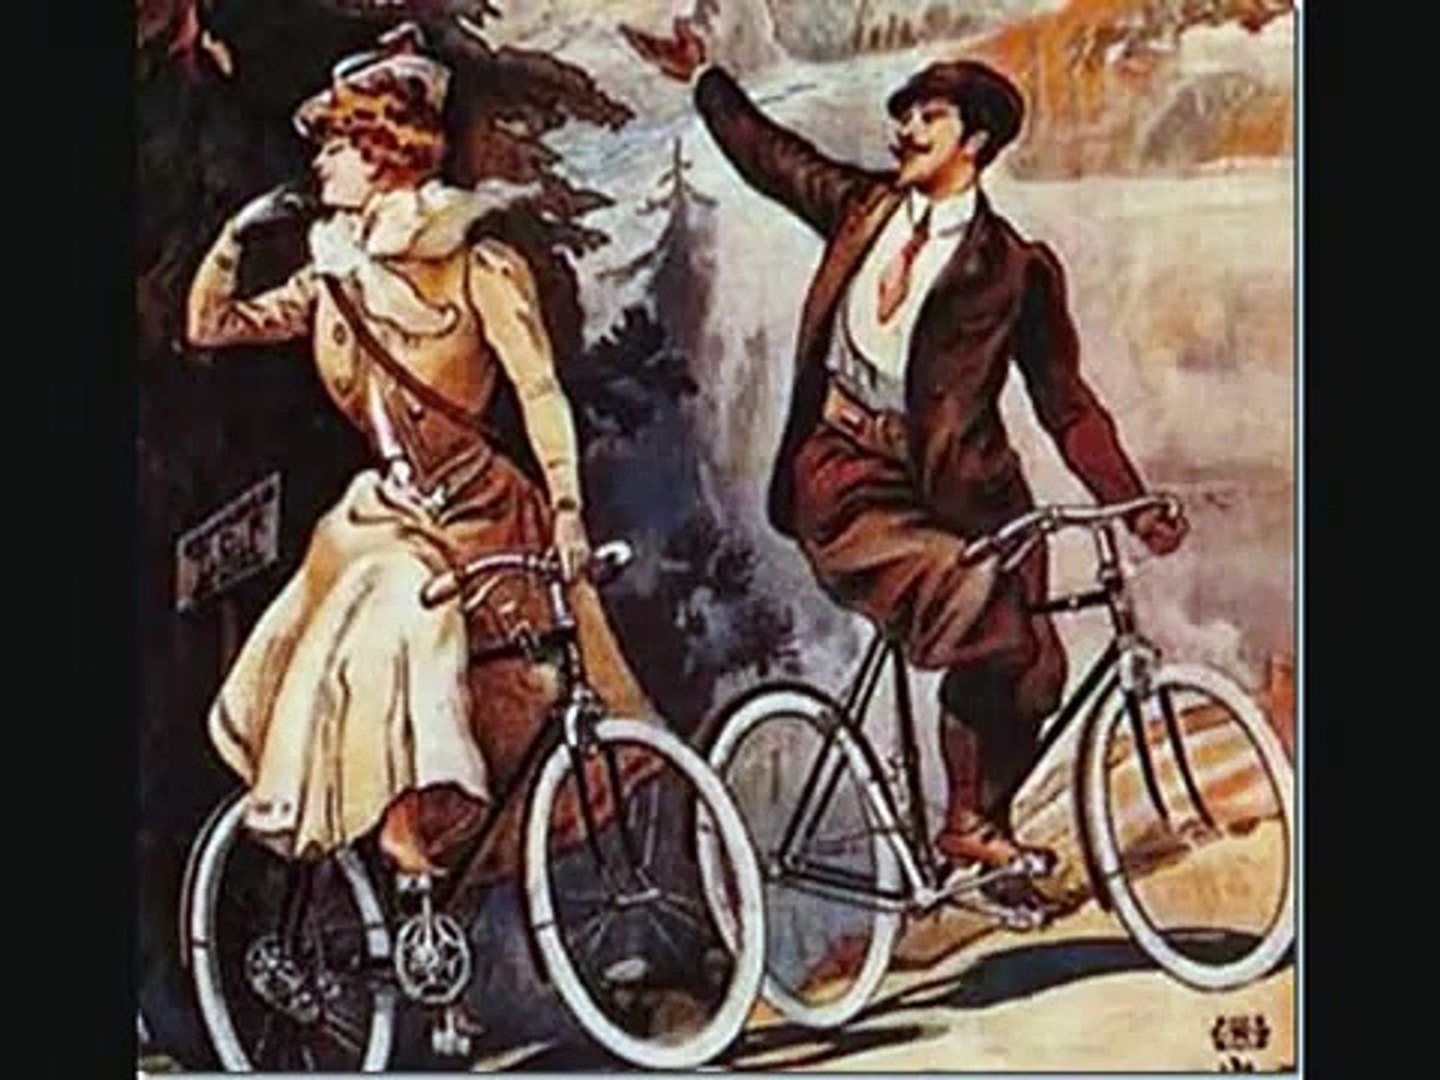 Ma dove vai bellezza in bicicletta (Silvana Pampanini) - Video Dailymotion